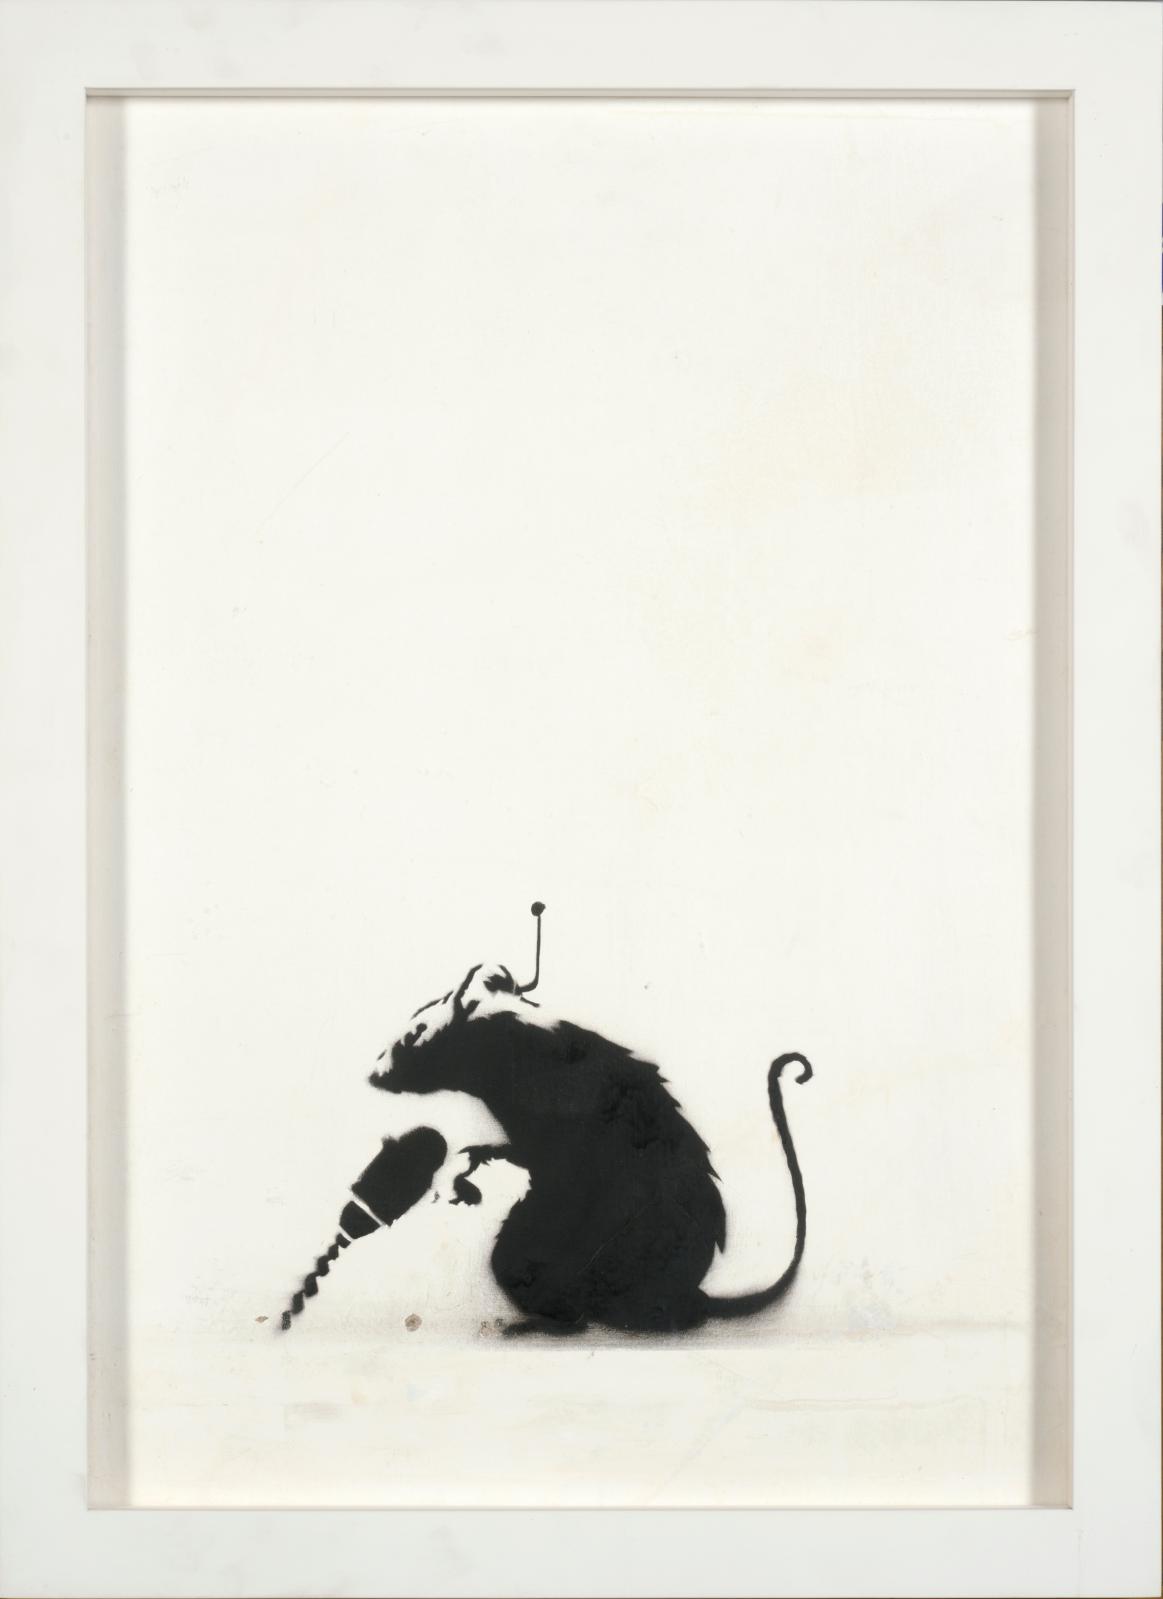 Le rat de Banksy, héraut des temps modernes